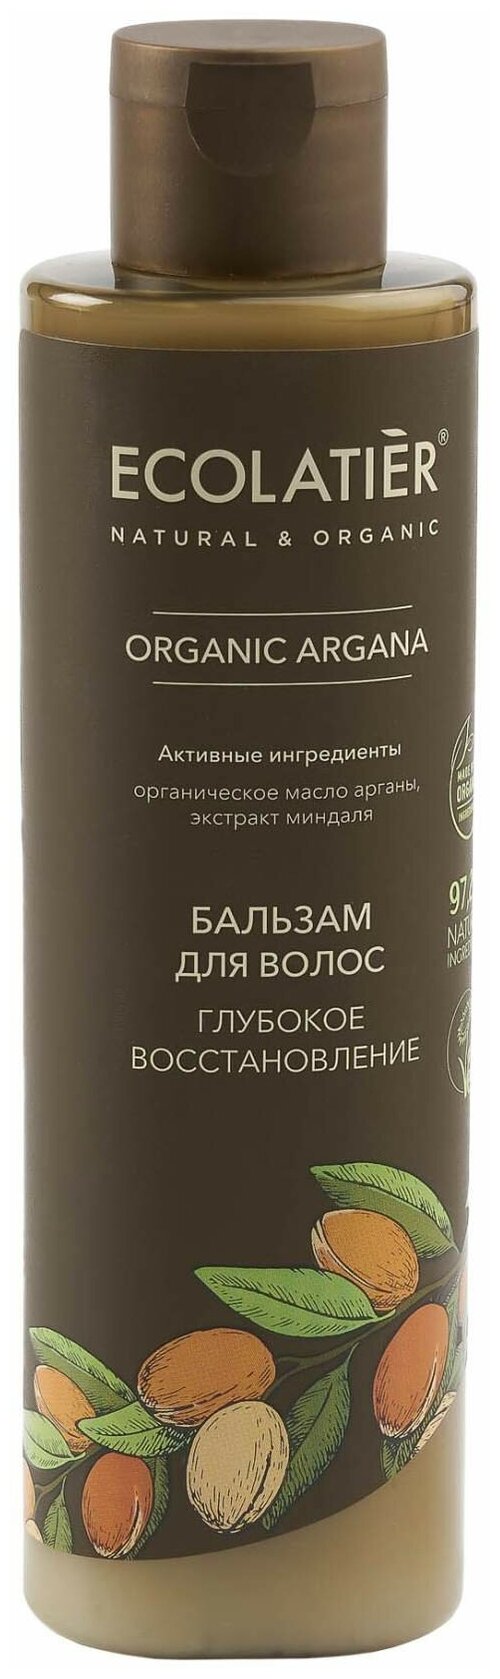 Ecolatier GREEN Бальзам для волос Глубокое восстановление Серия ORGANIC ARGANA, 250 мл